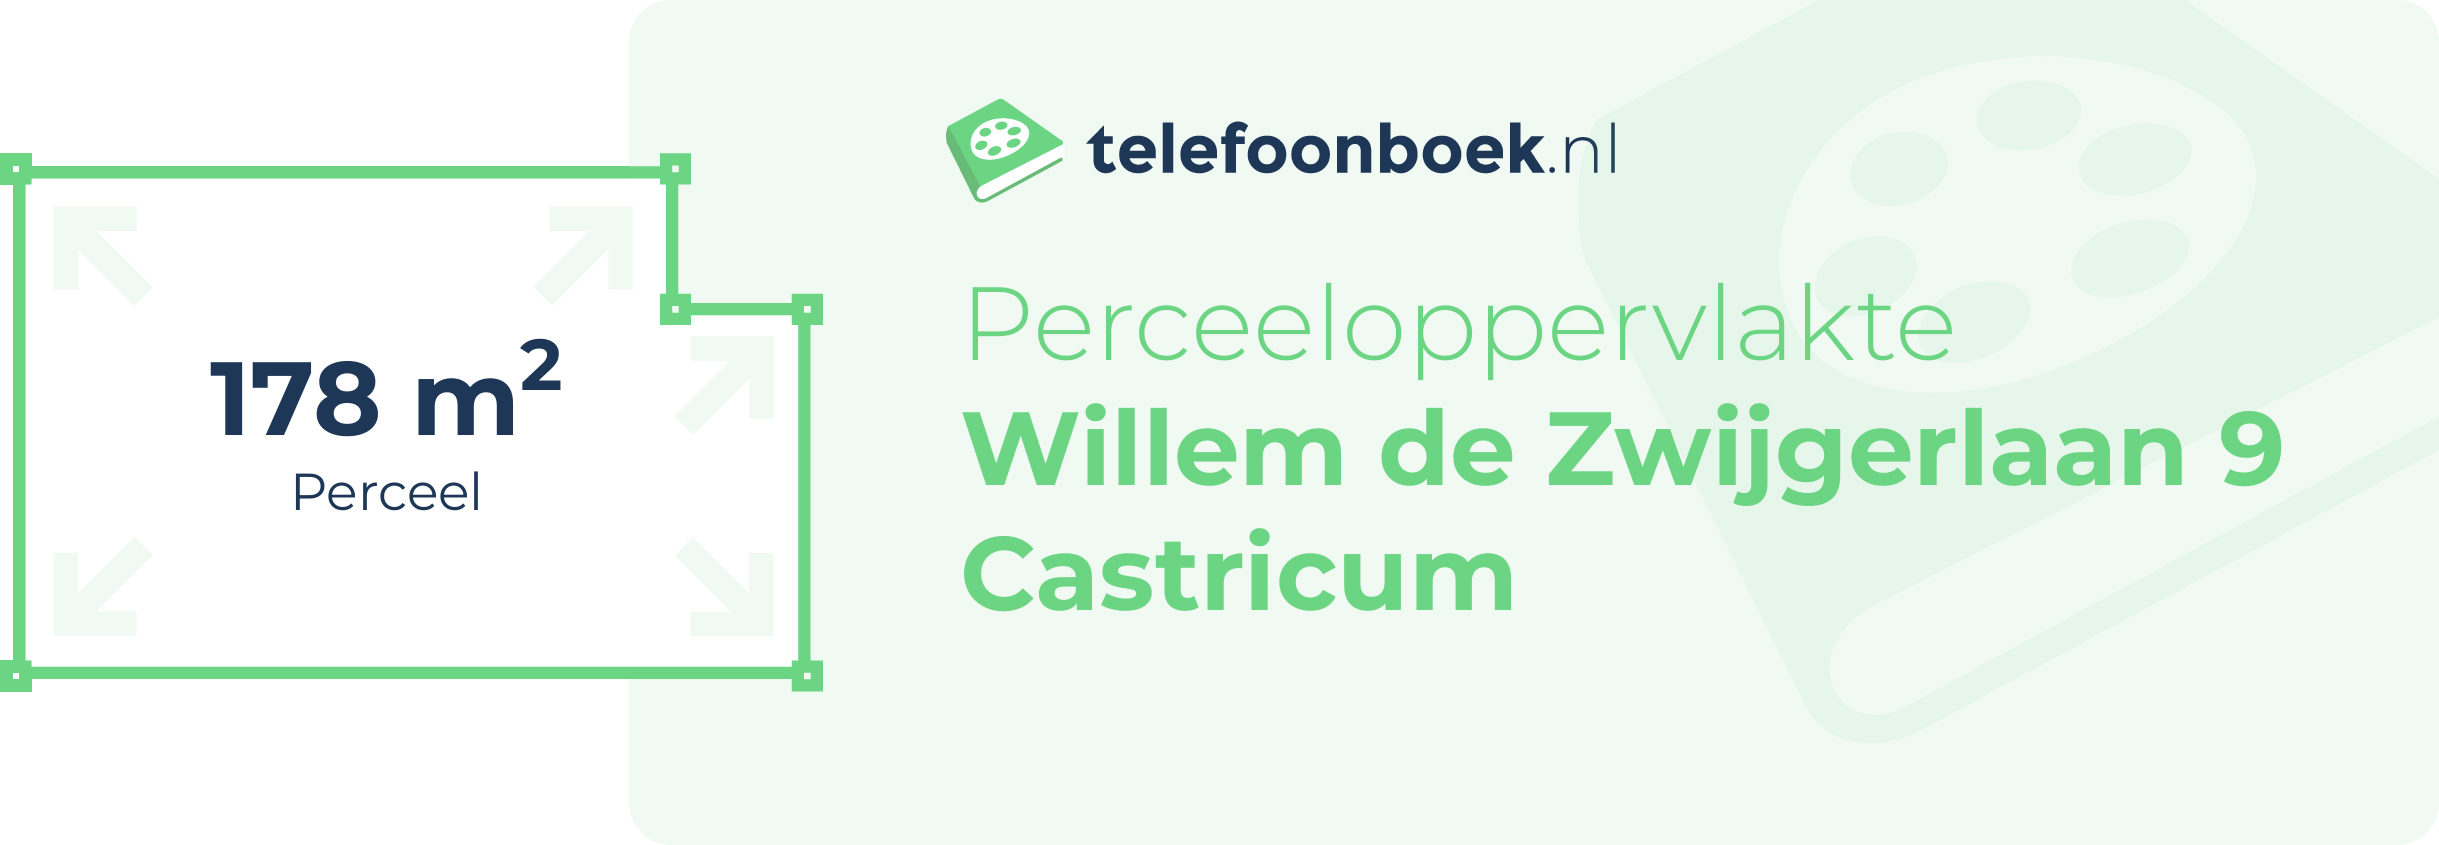 Perceeloppervlakte Willem De Zwijgerlaan 9 Castricum